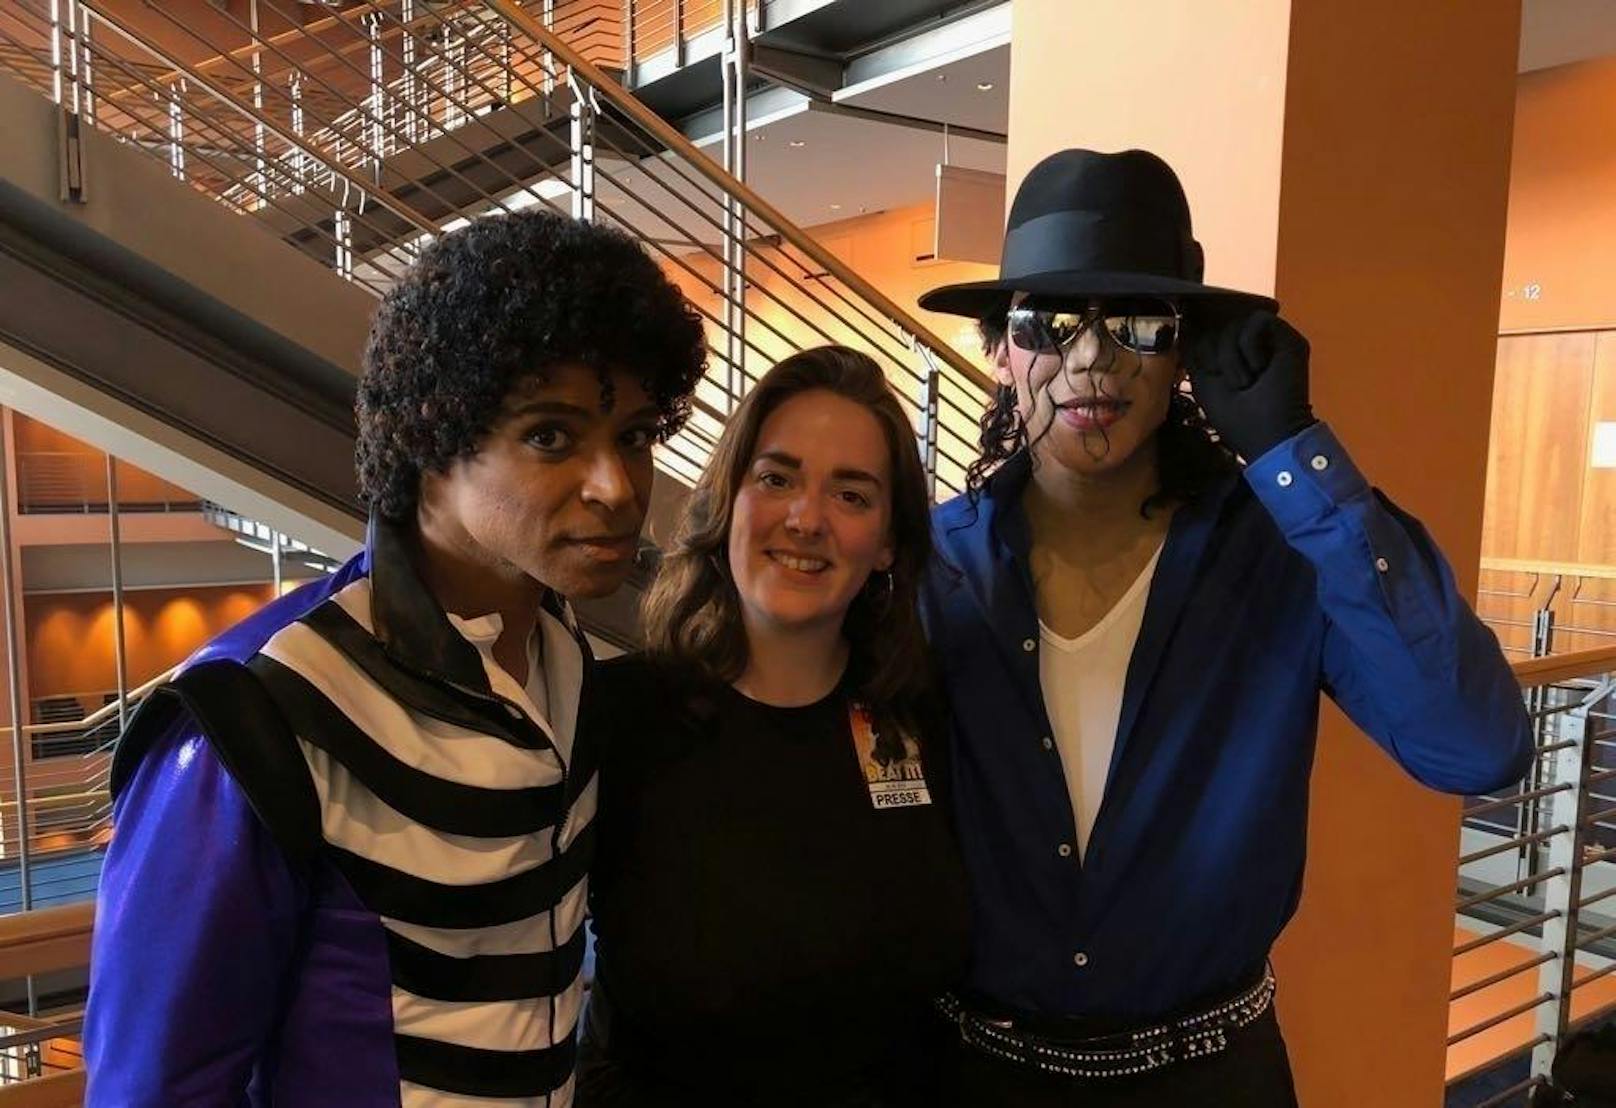 Heute-Redakteurin Manuela Tiefnig (Mitte) mit zwei Jackson-Darstellern. Links die jüngere, rechts die ältere Version des "King of Pop".